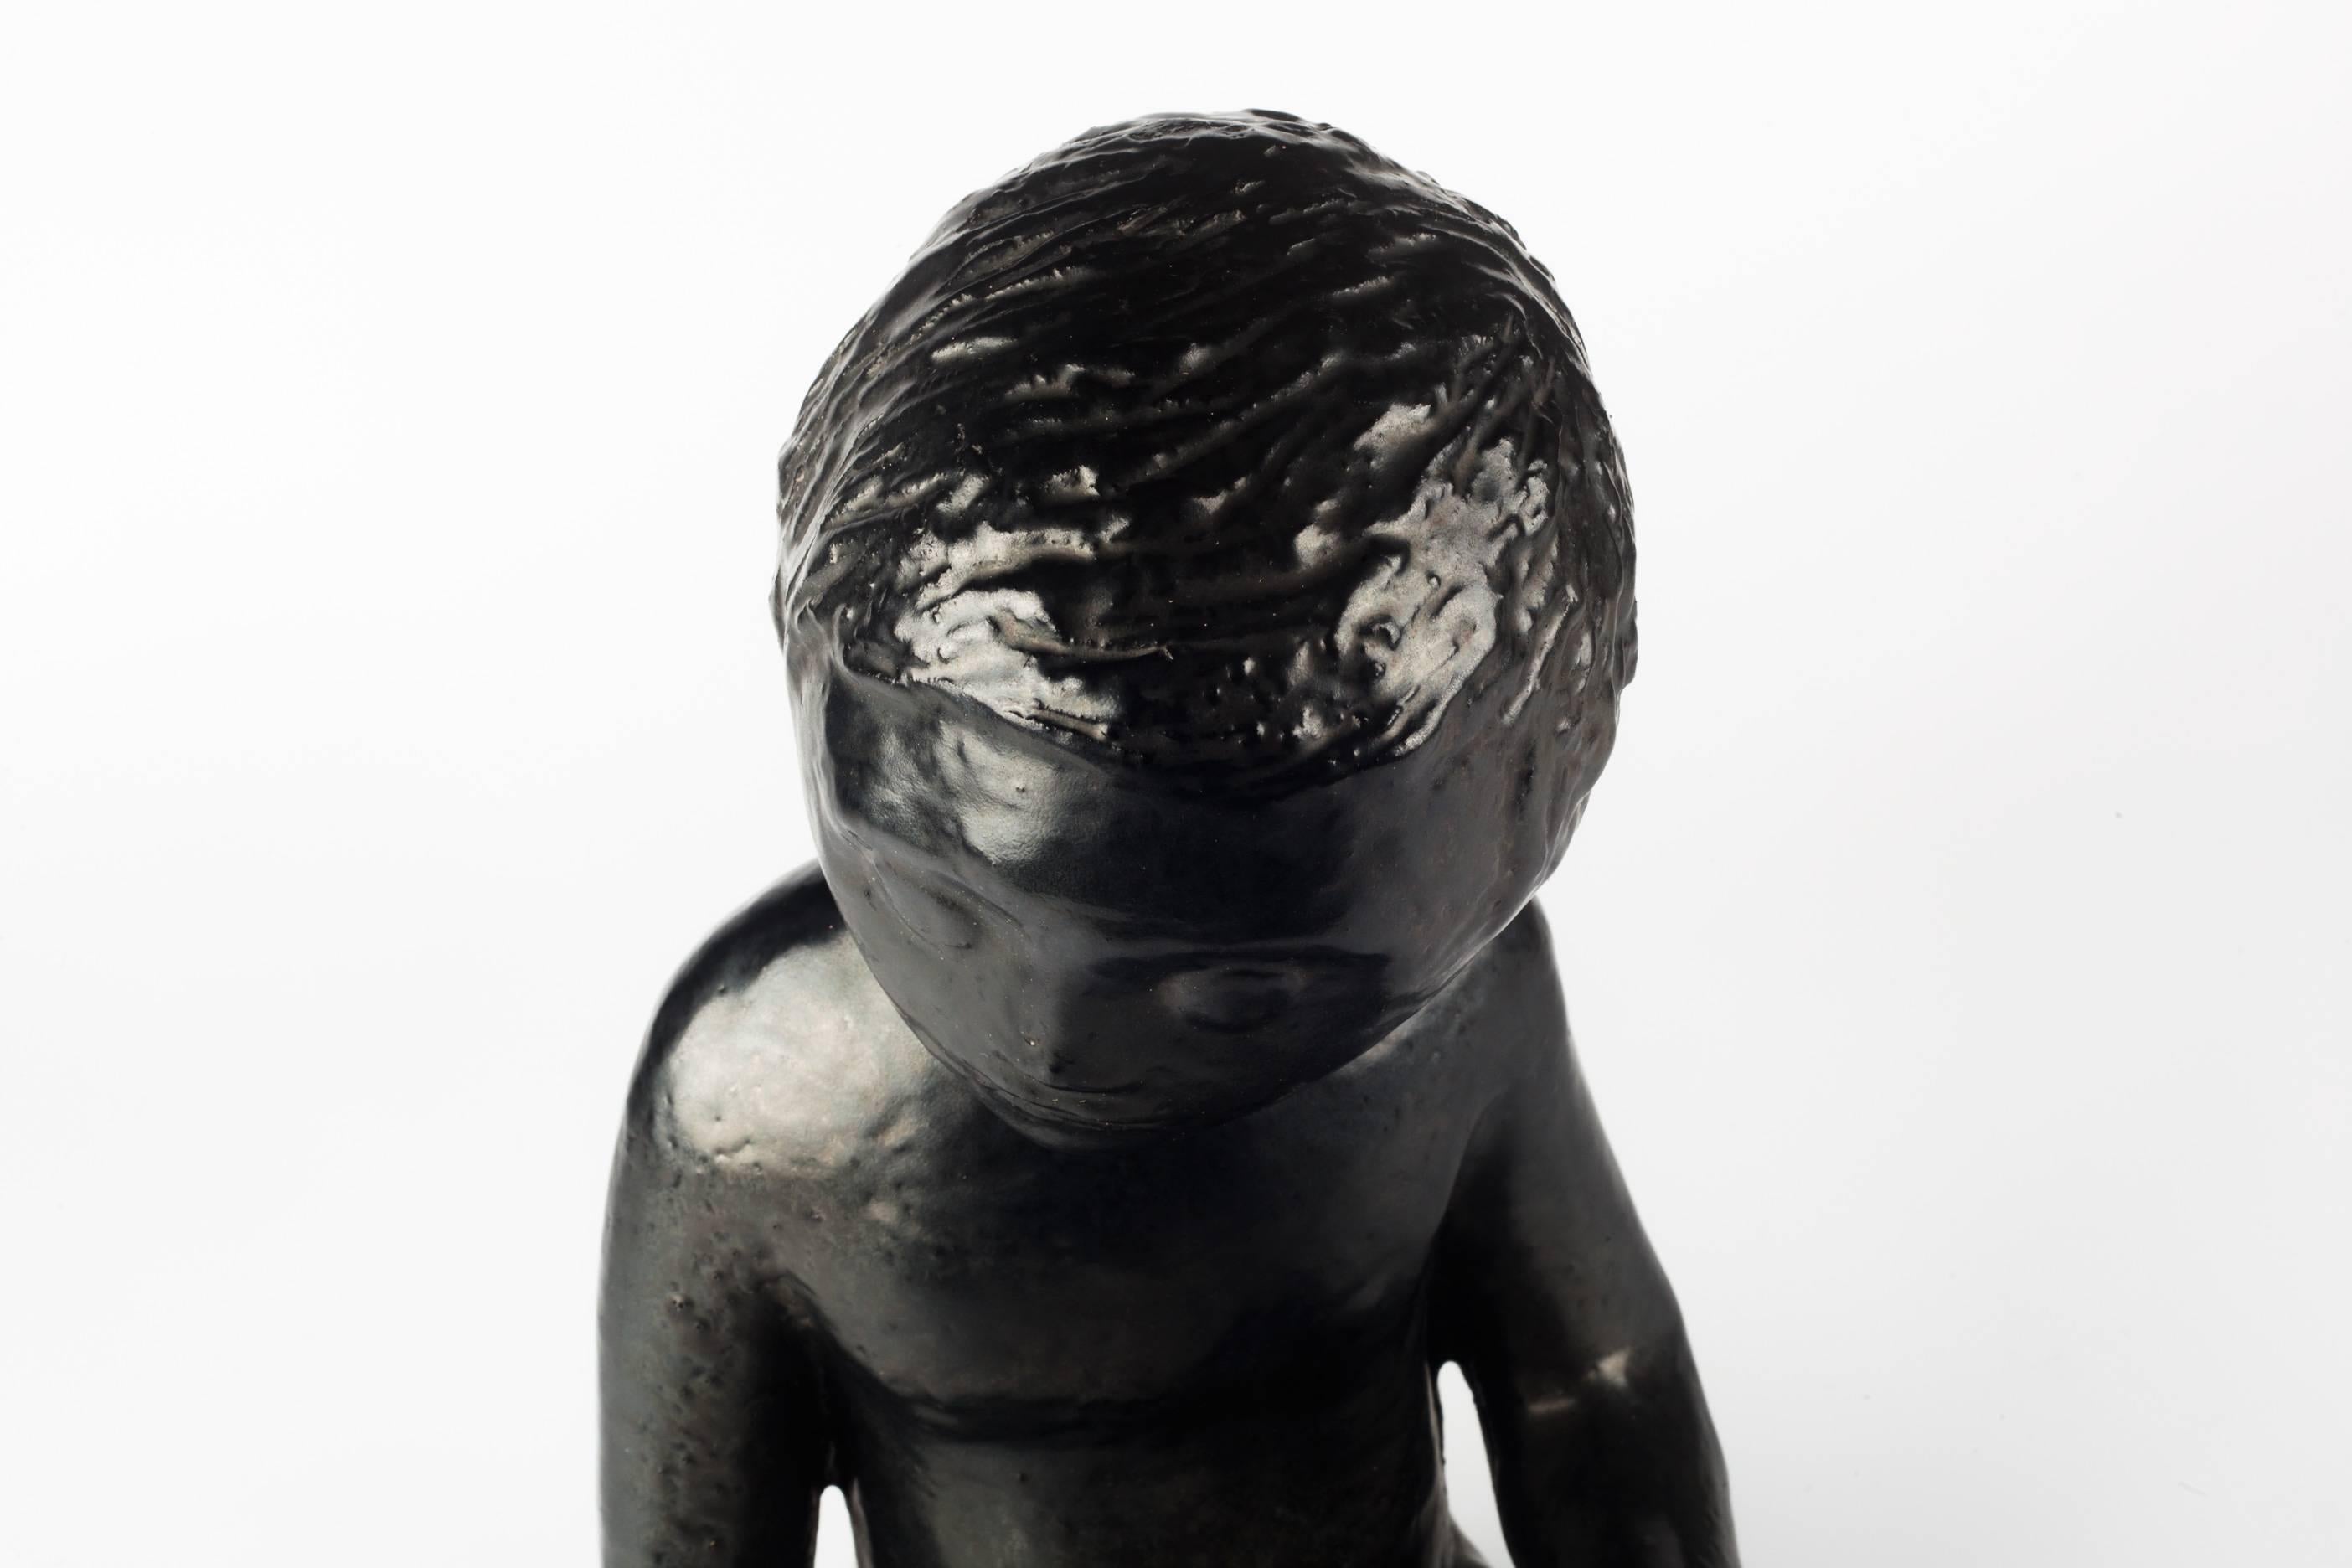 Late 20th Century Child Ceramic Sculpture by Perignem Amphora, Black, Belgium, 1970s